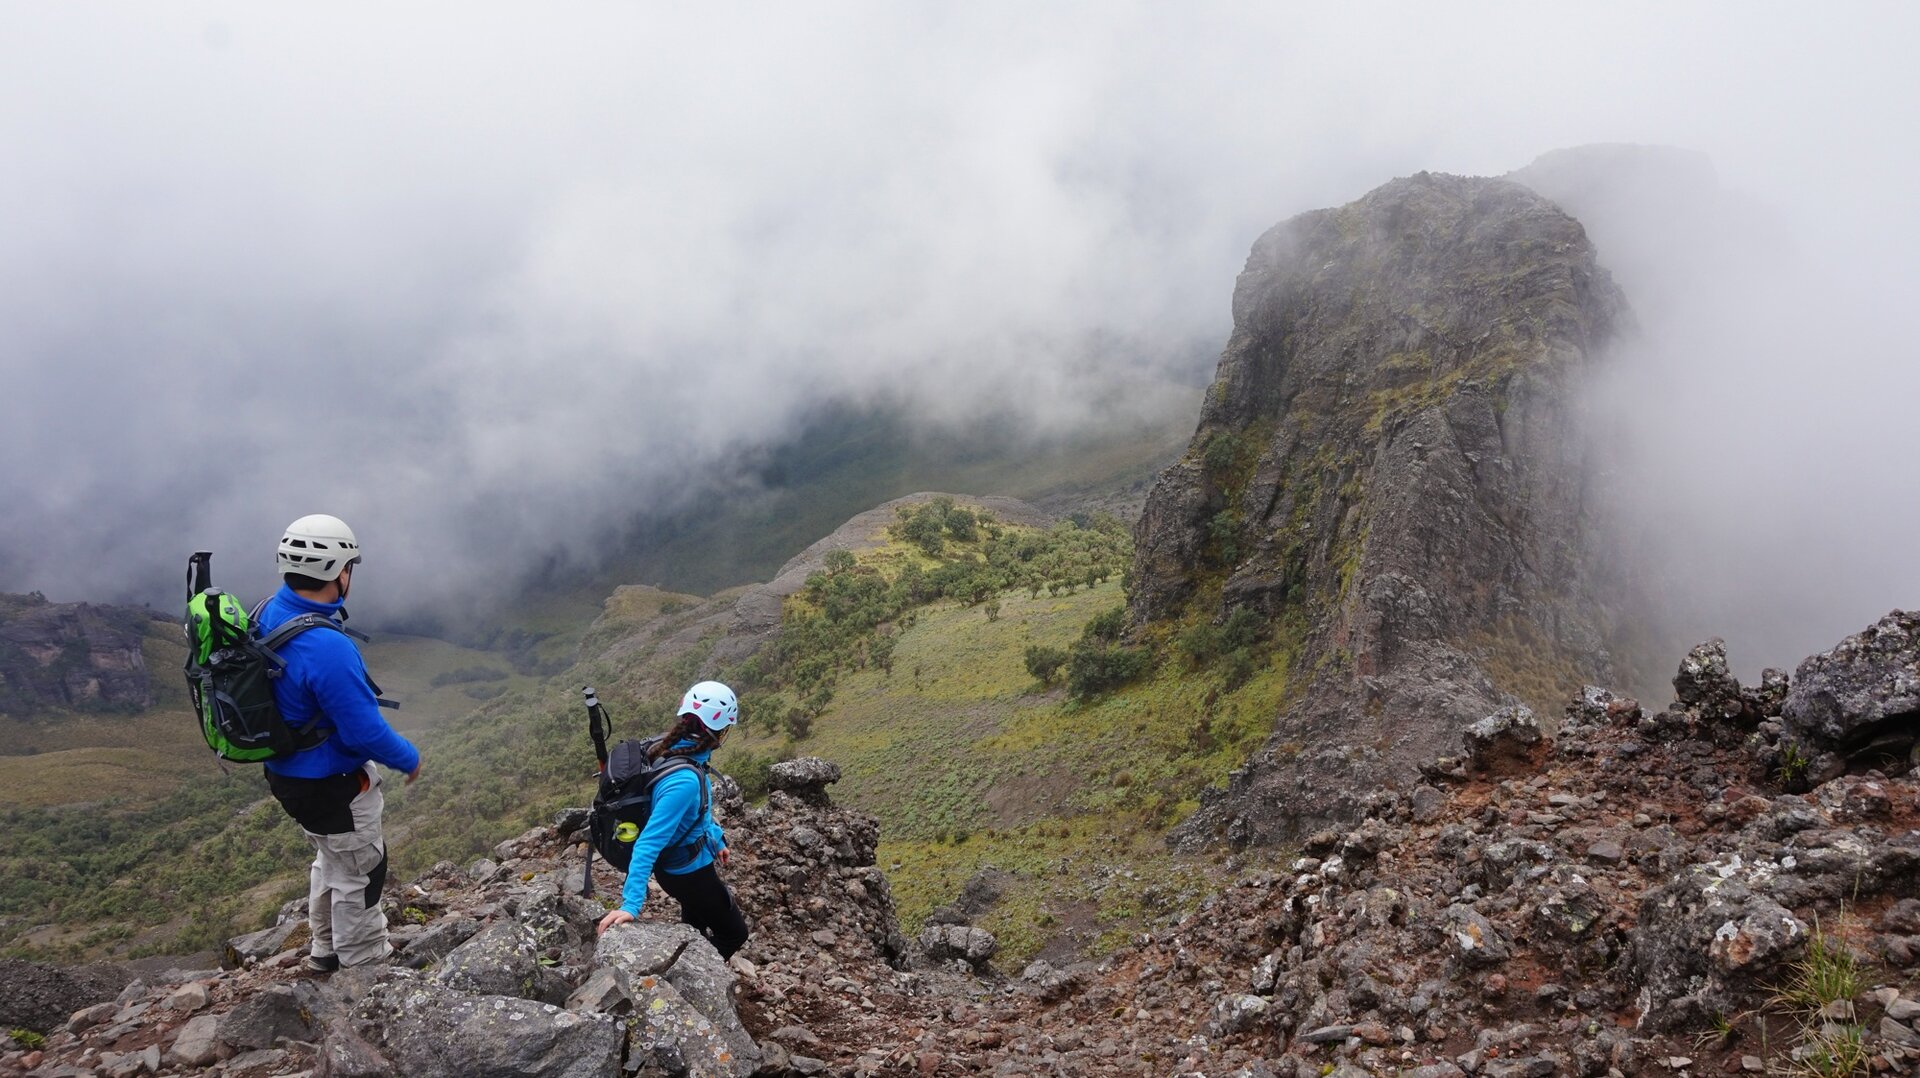 Na zdjęciu znajduje się dwoje turystów w trakcie pieszej wędrówki w górach, schodzących ze skały w dół. Na głowach mają kaski ochronne, na plecach niosą plecaki. Góry otoczone są mgłą.